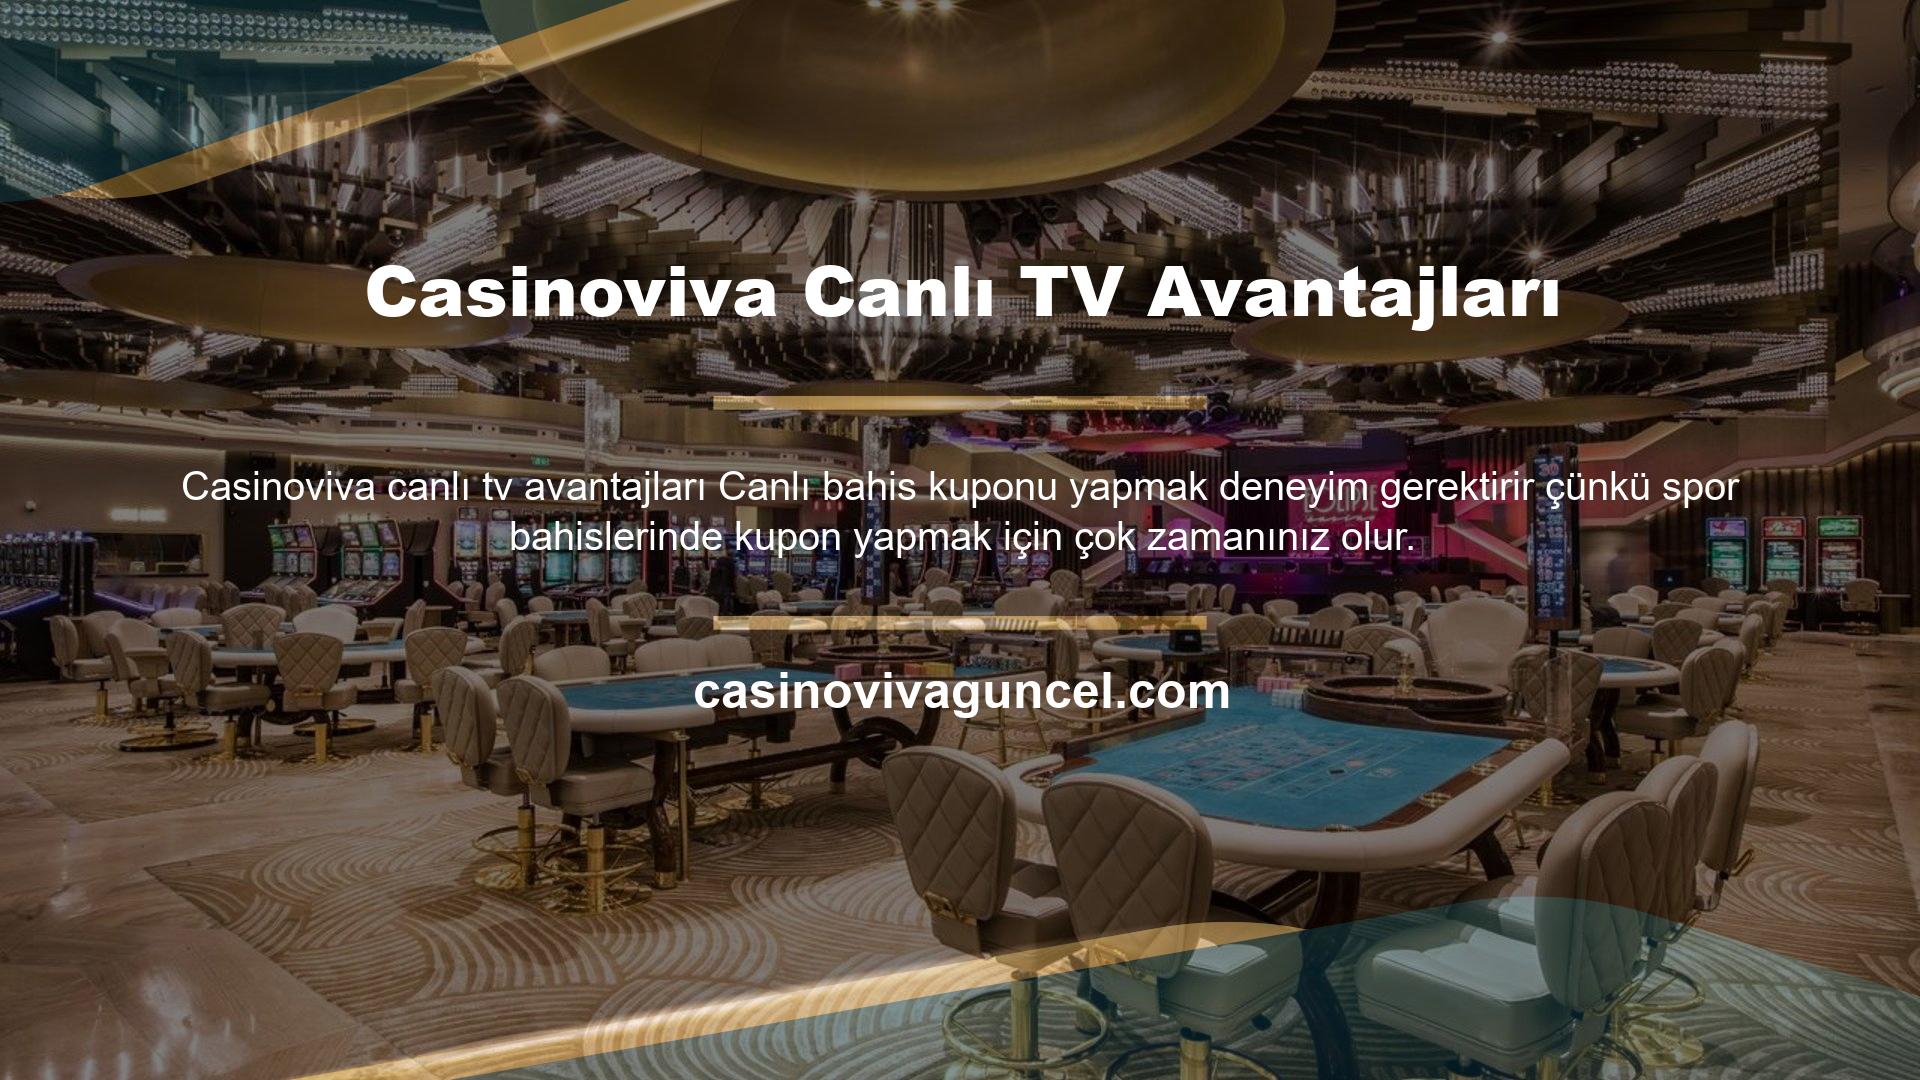 Casinoviva Canlı TV Avantajları